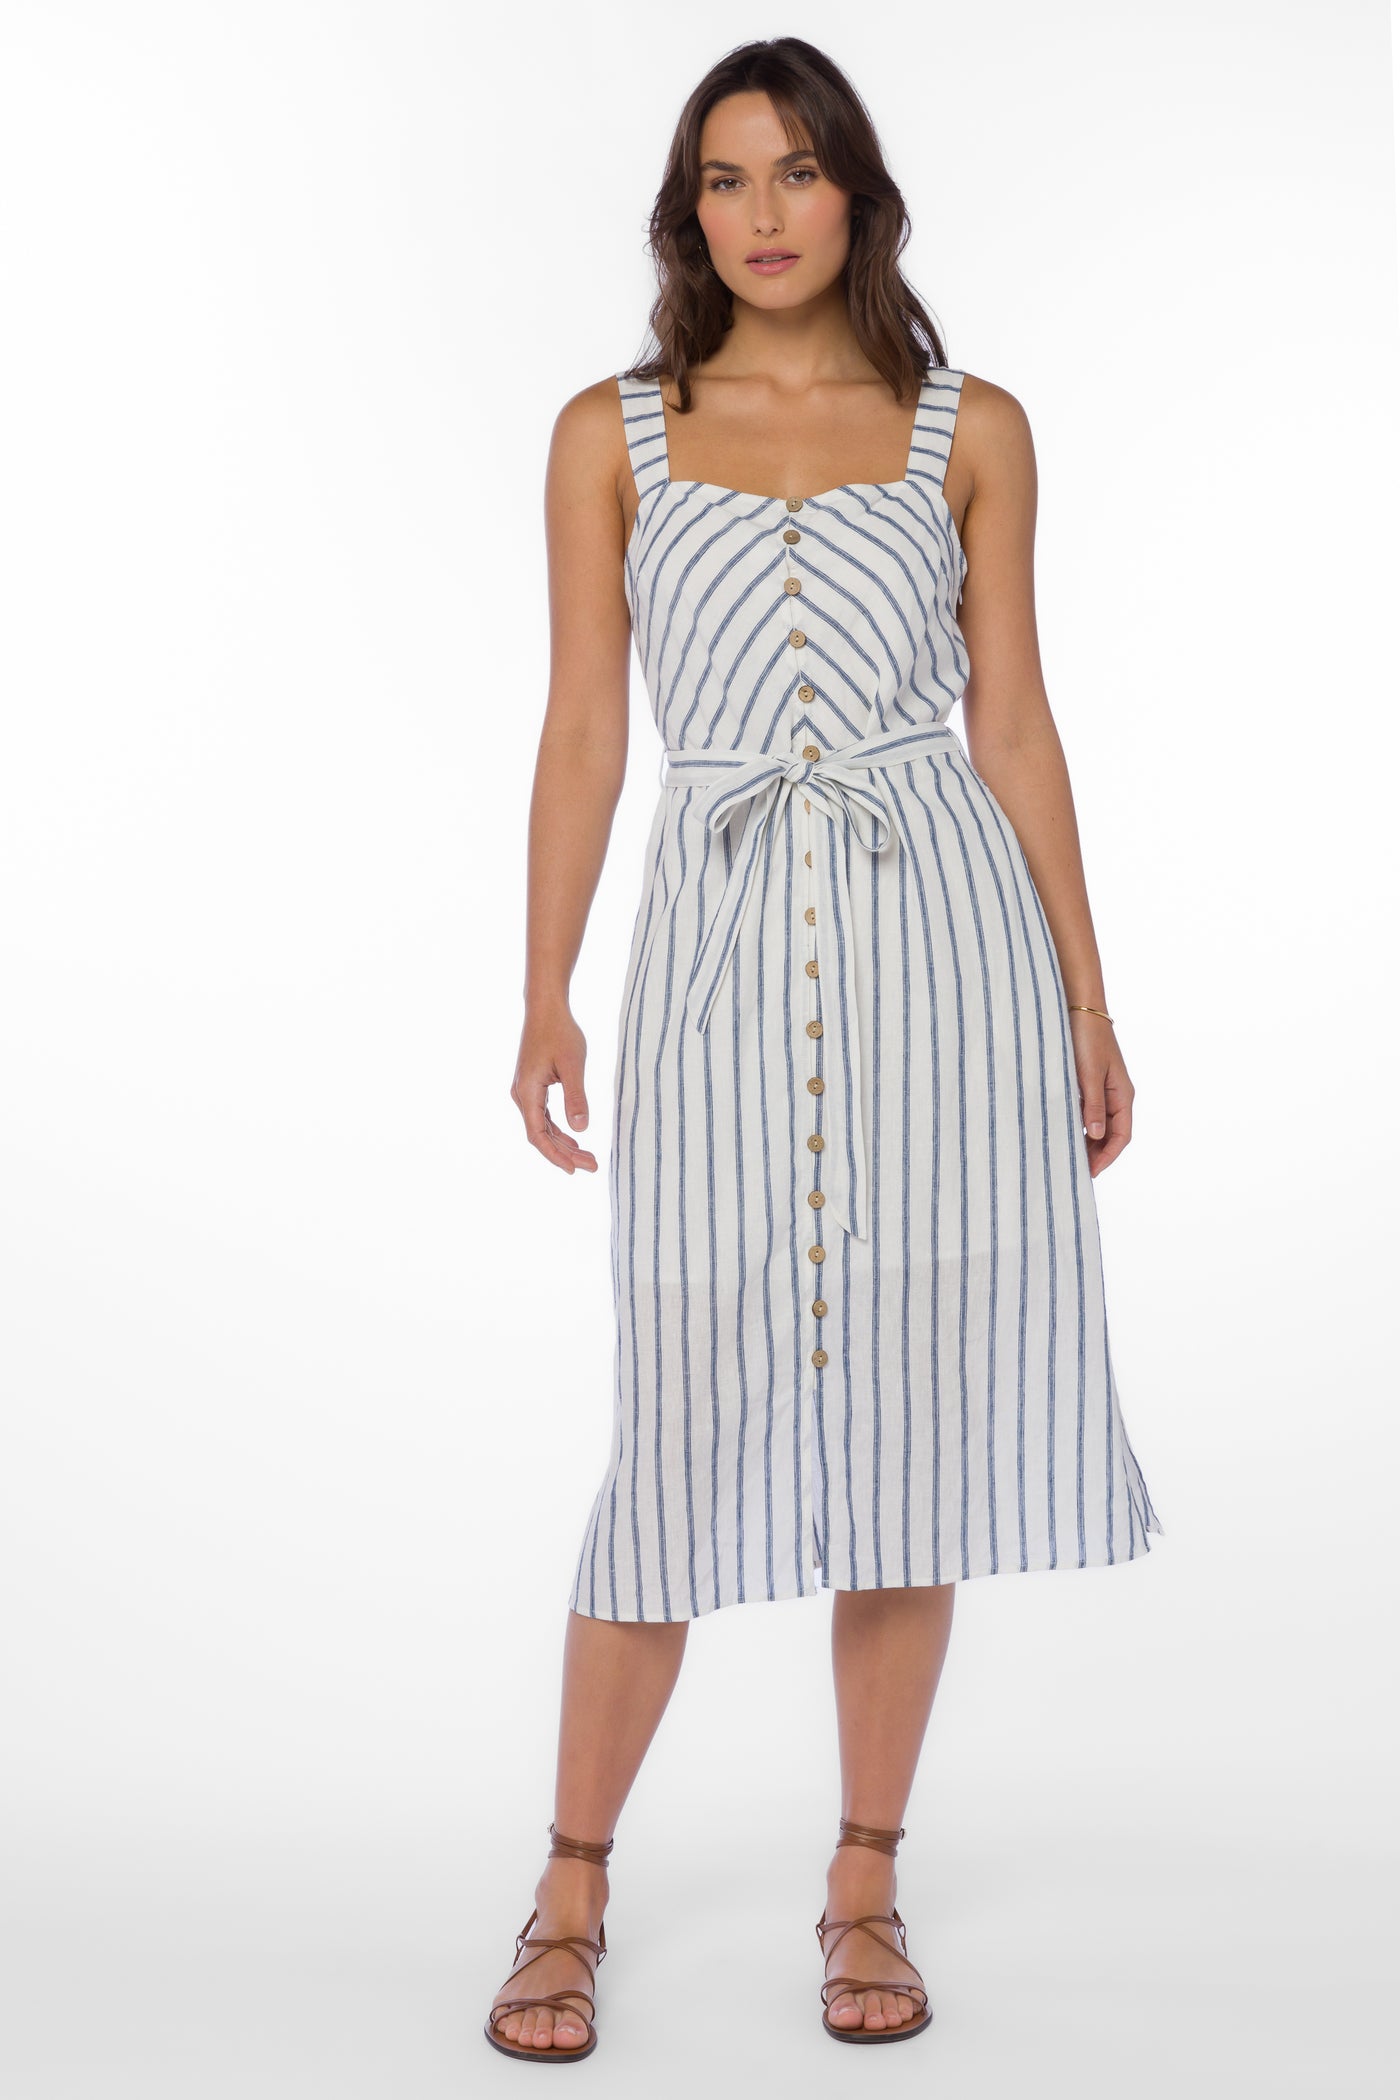 Amber Navy Stripe Dress - Dresses - Velvet Heart Clothing